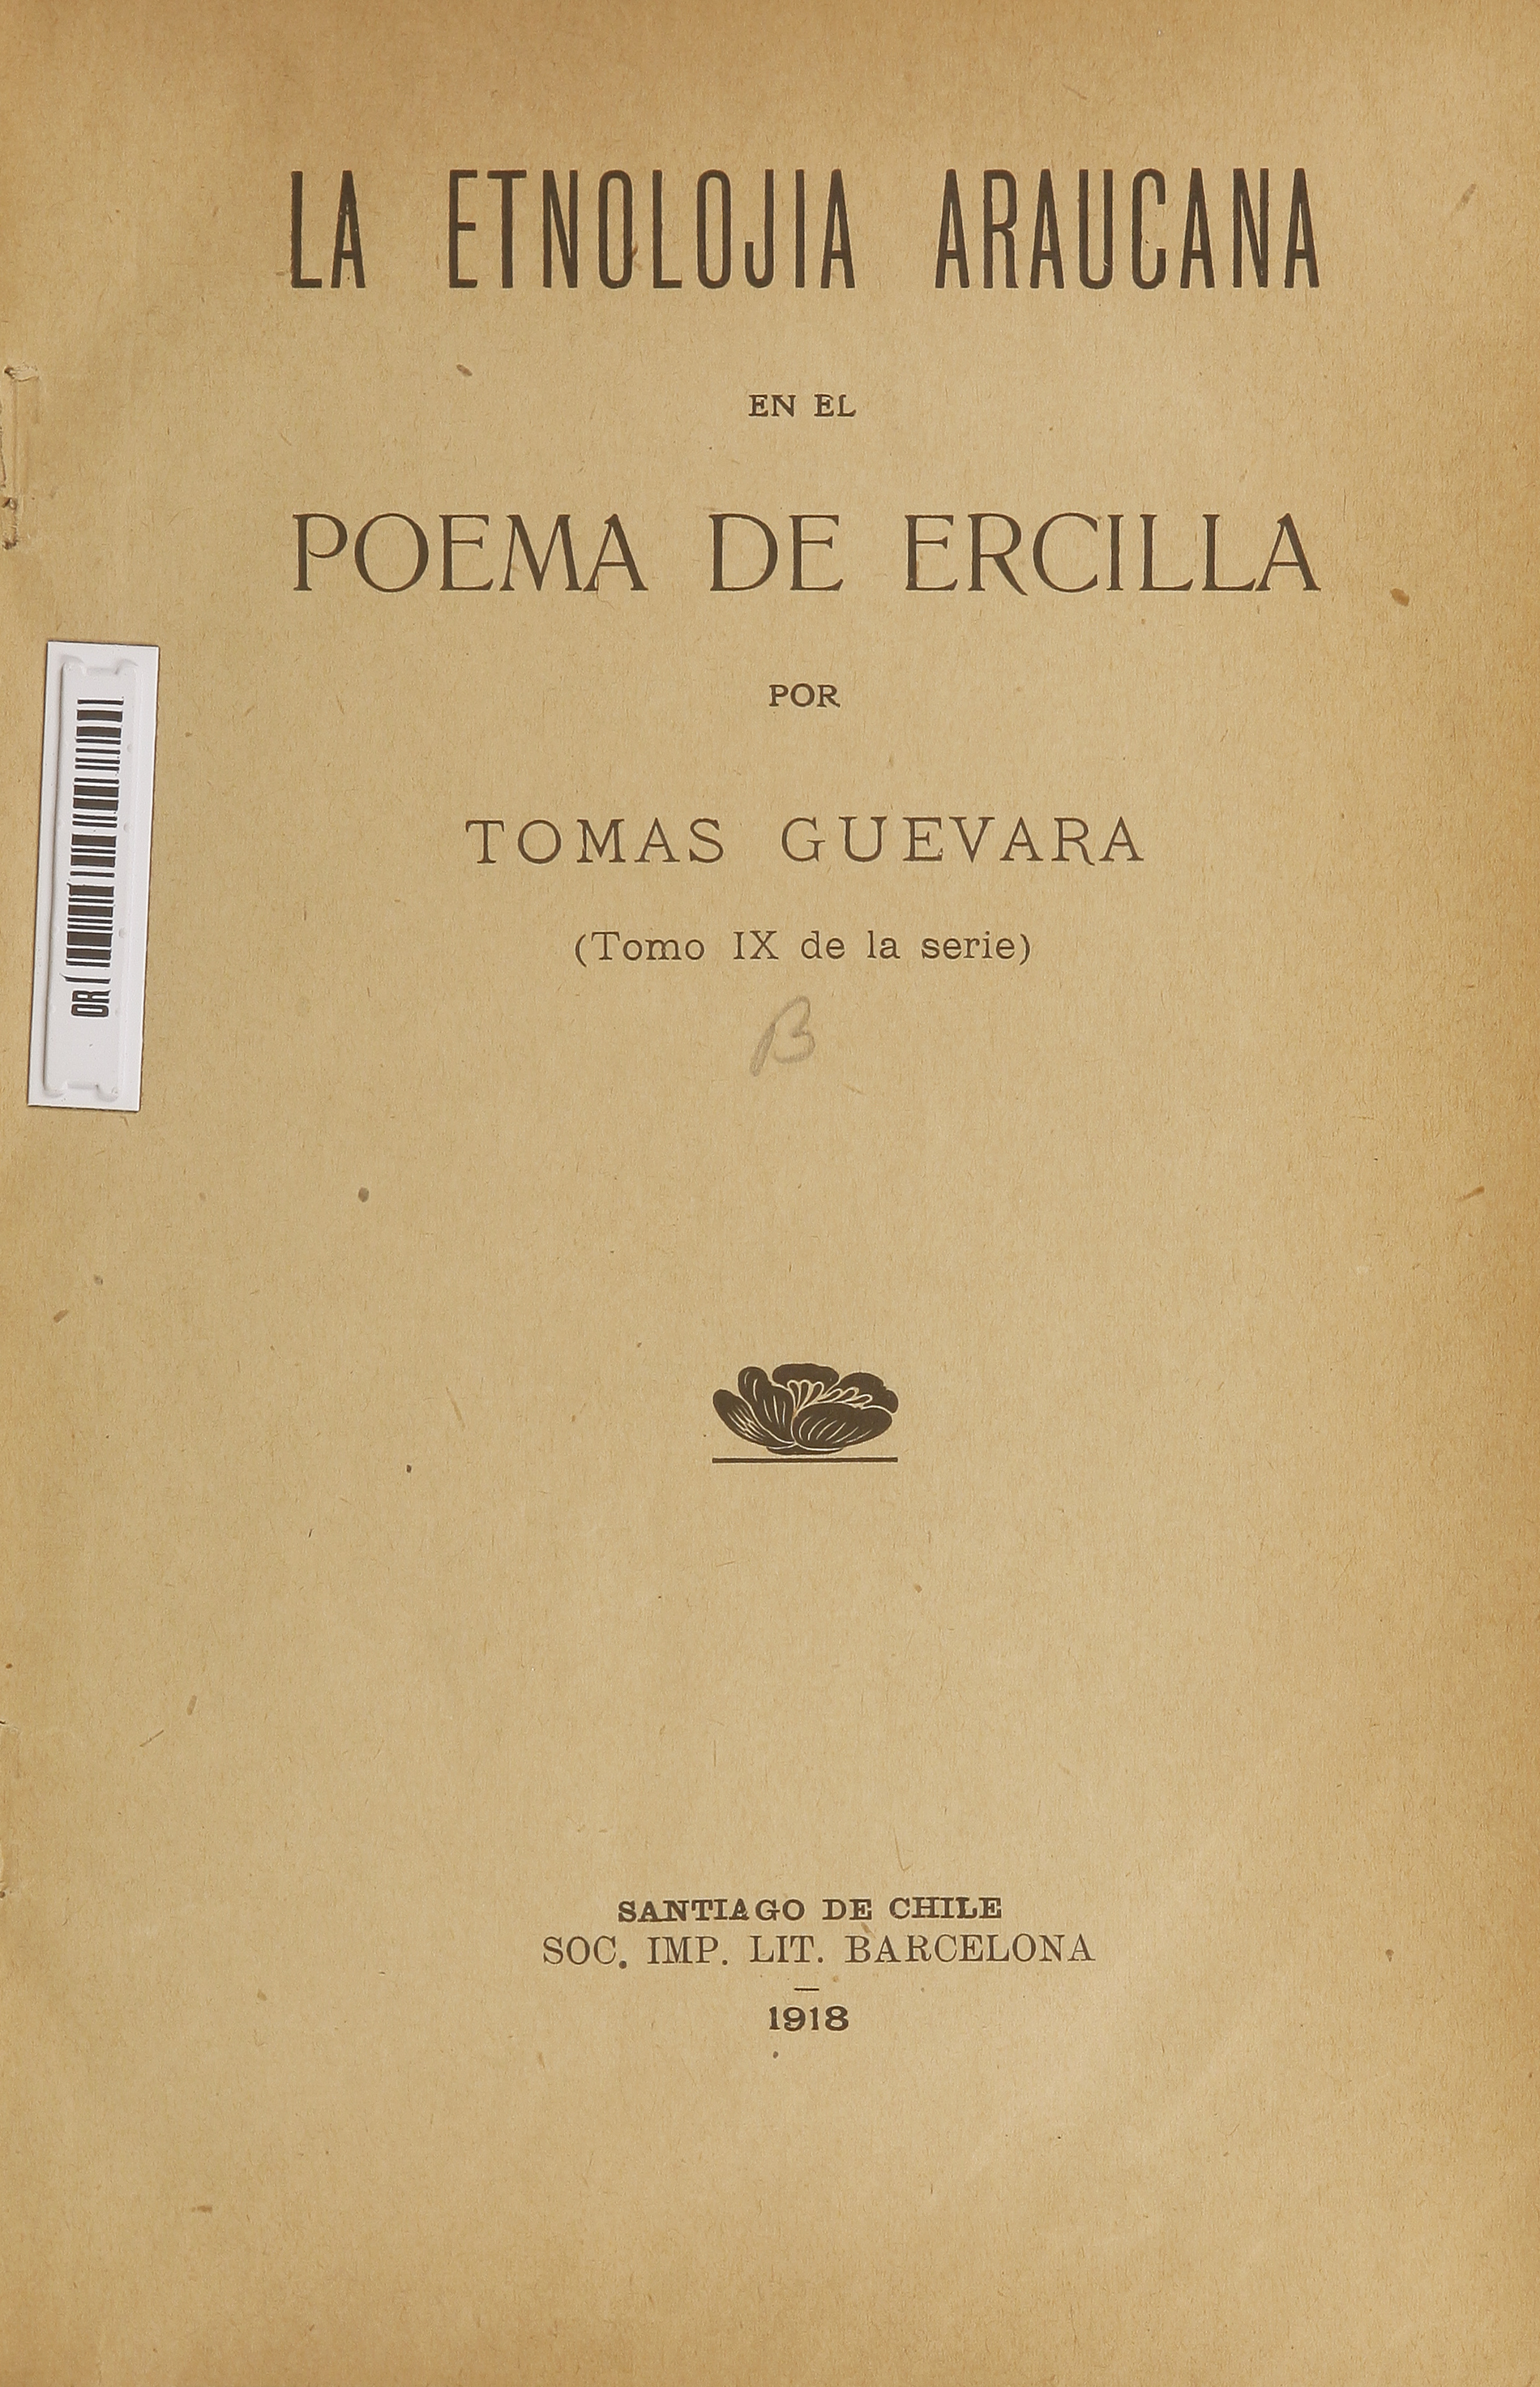 La etnolojía araucana en el poema de Ercilla